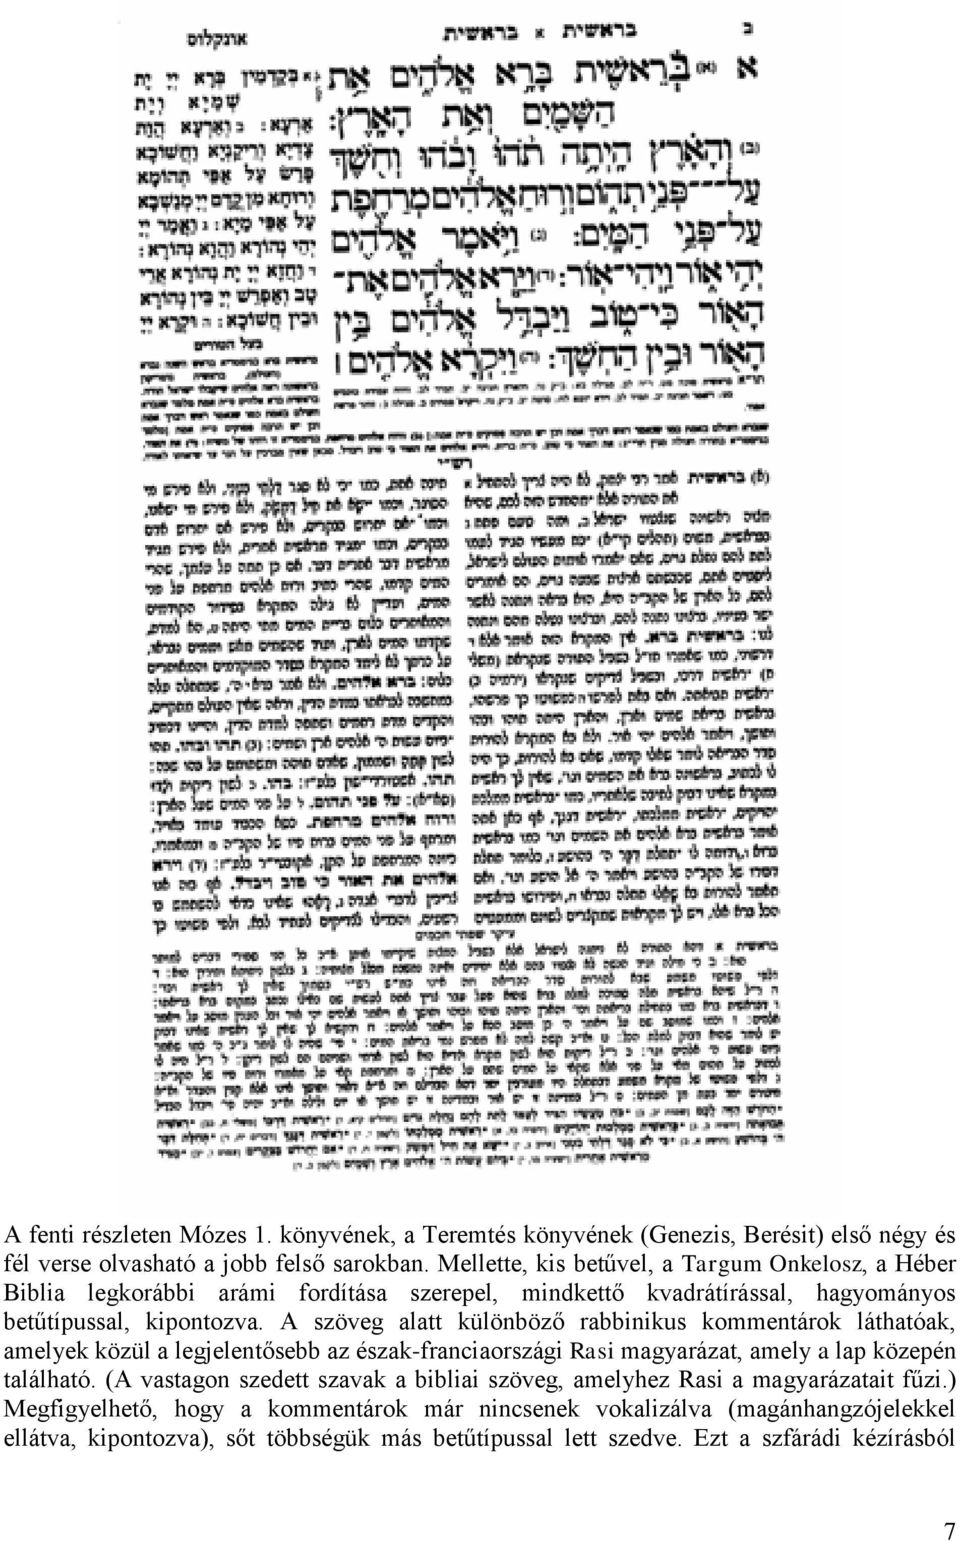 A szöveg alatt különböző rabbinikus kommentárok láthatóak, amelyek közül a legjelentősebb az észak-franciaországi Rasi magyarázat, amely a lap közepén található.